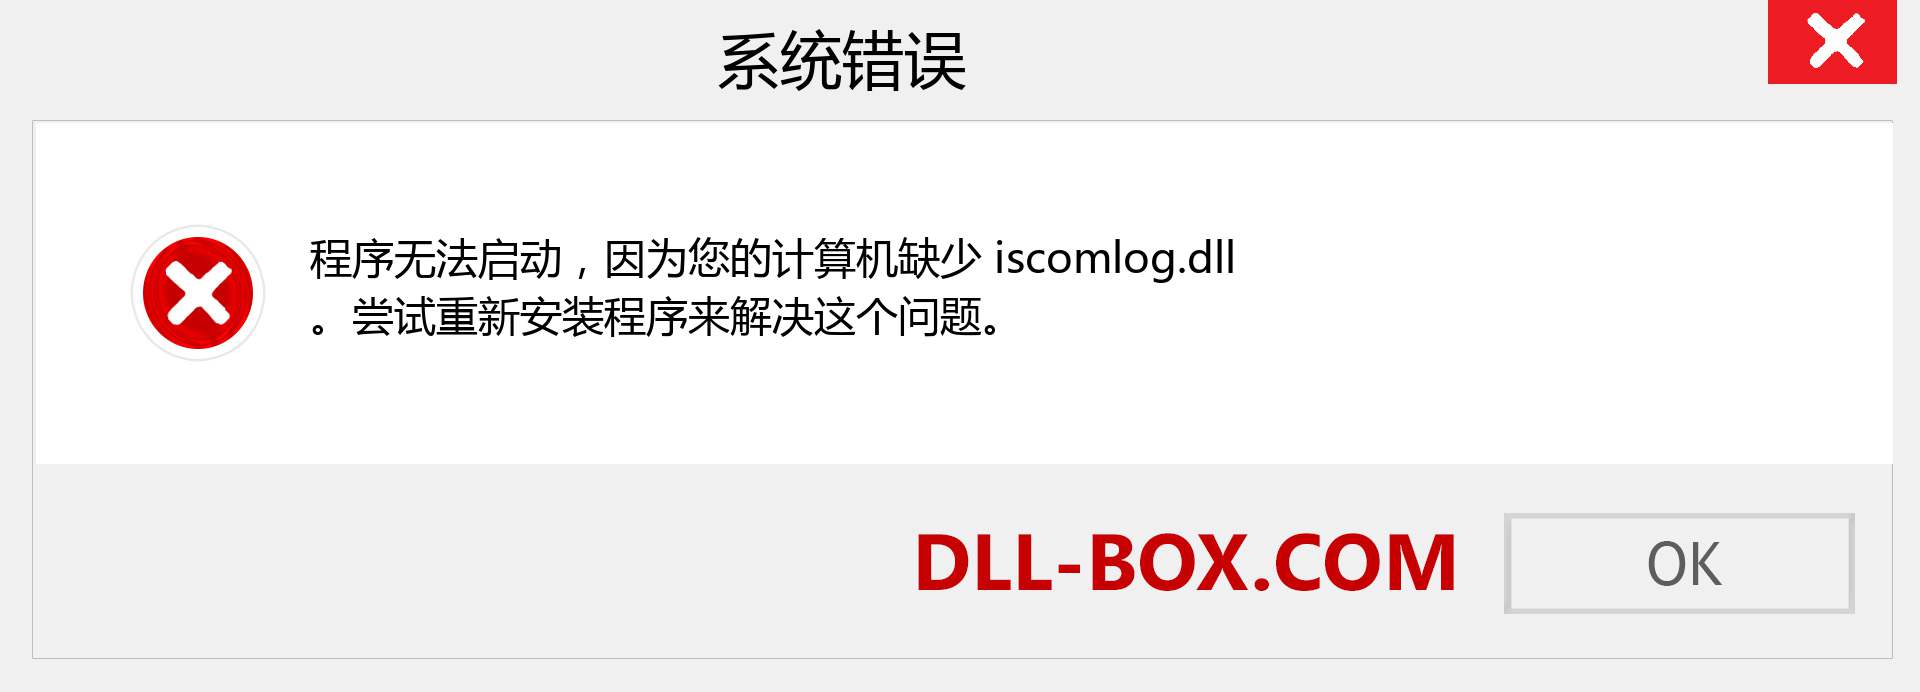 iscomlog.dll 文件丢失？。 适用于 Windows 7、8、10 的下载 - 修复 Windows、照片、图像上的 iscomlog dll 丢失错误